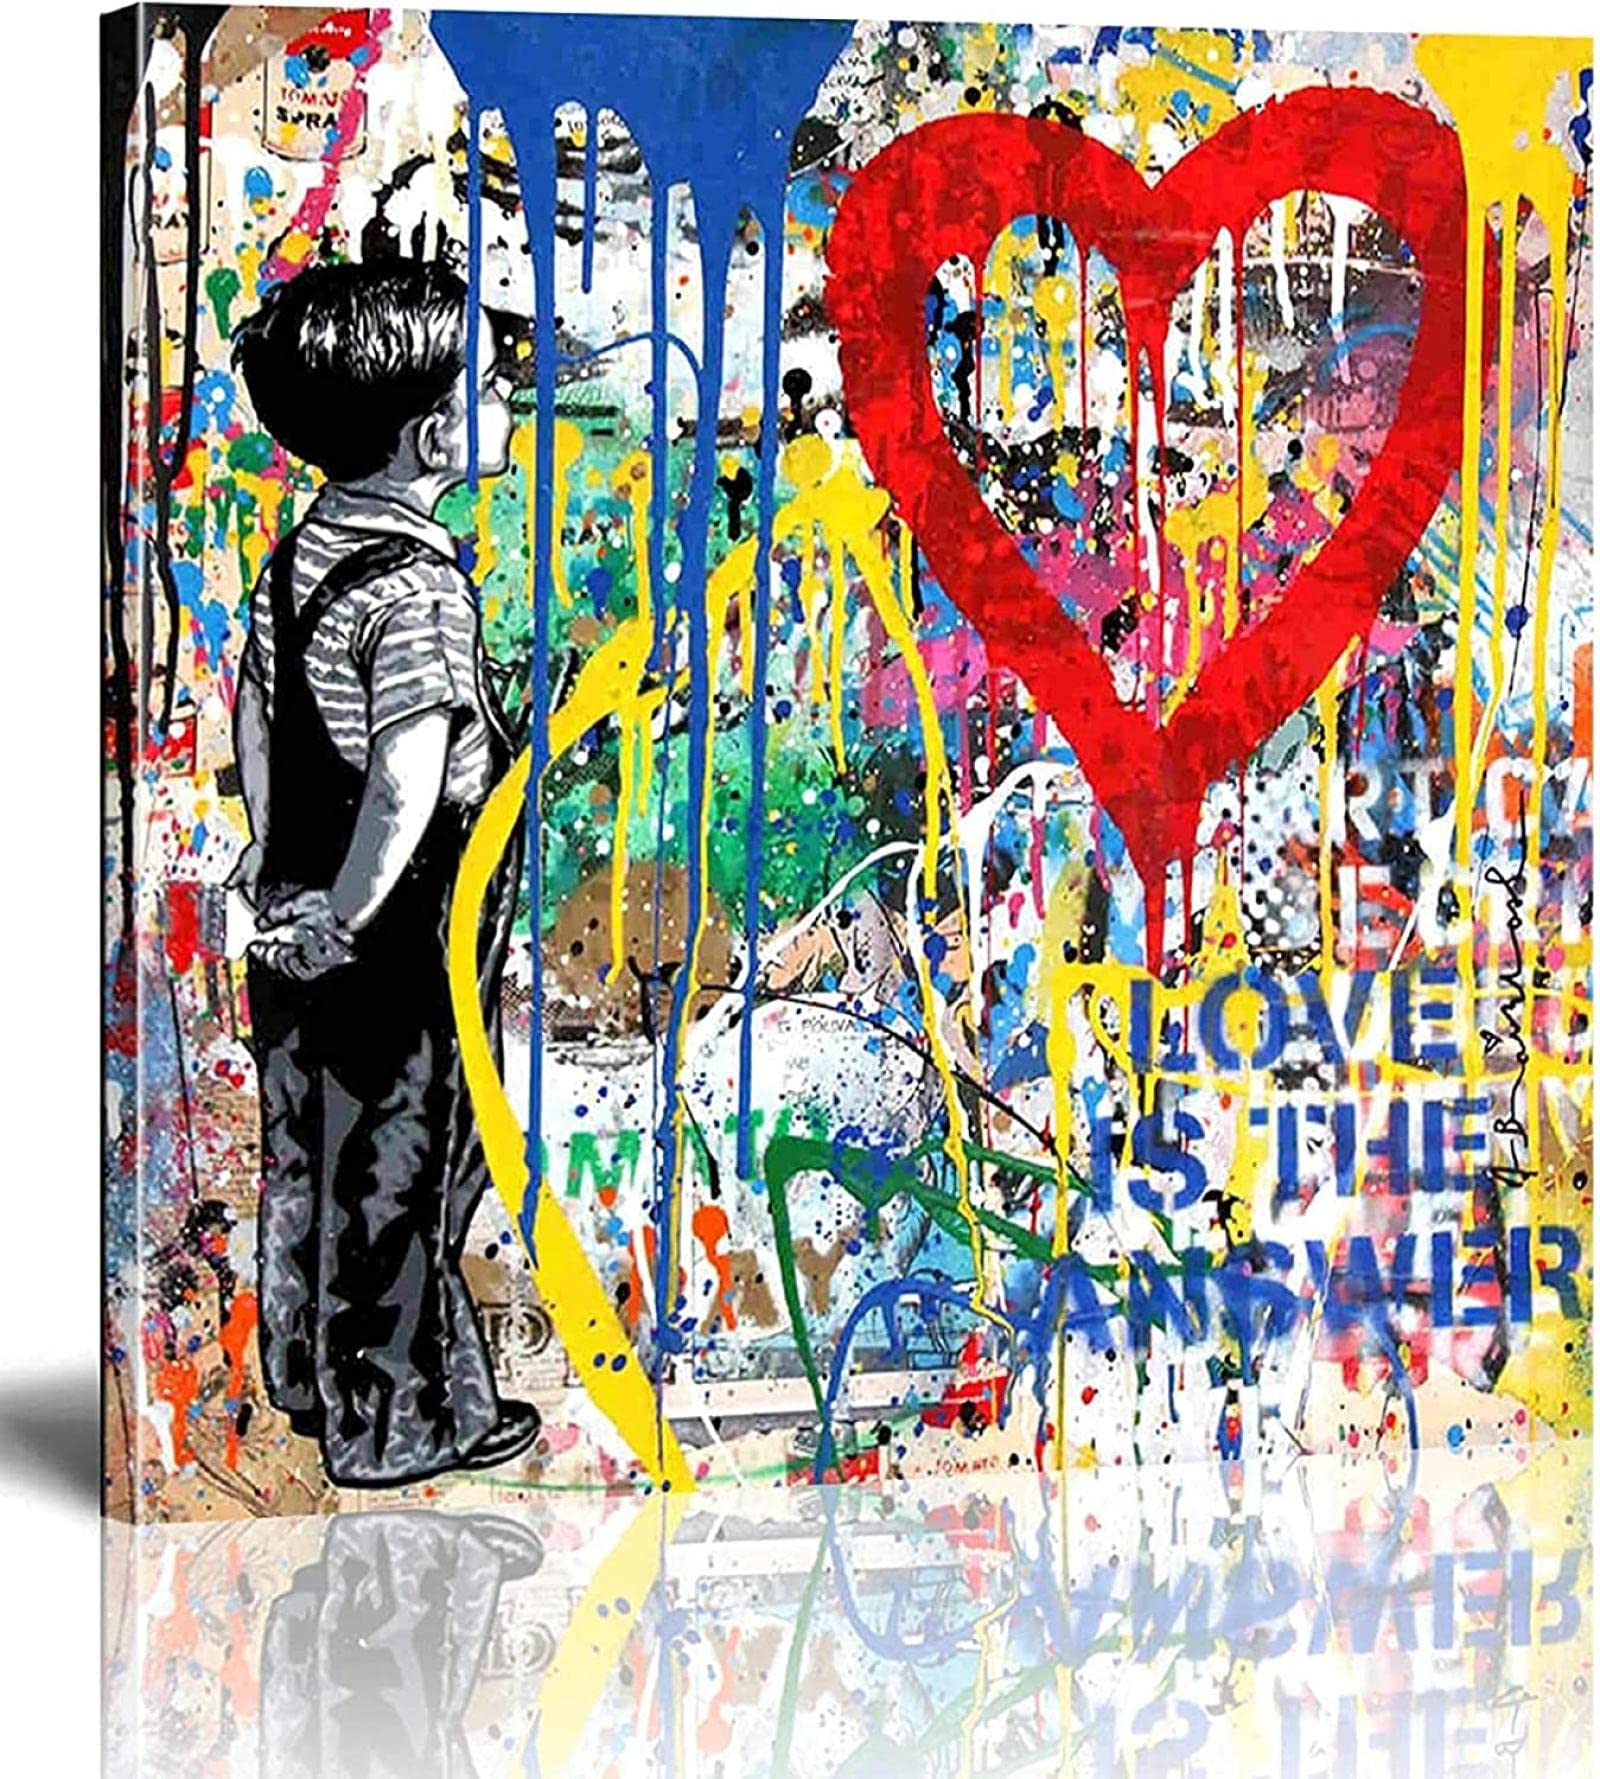 Banksy Bilder Leinwand-Liebe ist die Antwort- Straße Graffiti-Kunst Leinwandbilder sind Druck auf Leinwand-Wand-Kunstdruck-Wohnzimmer-Wand-Dekor 20x20cm/8x8inch